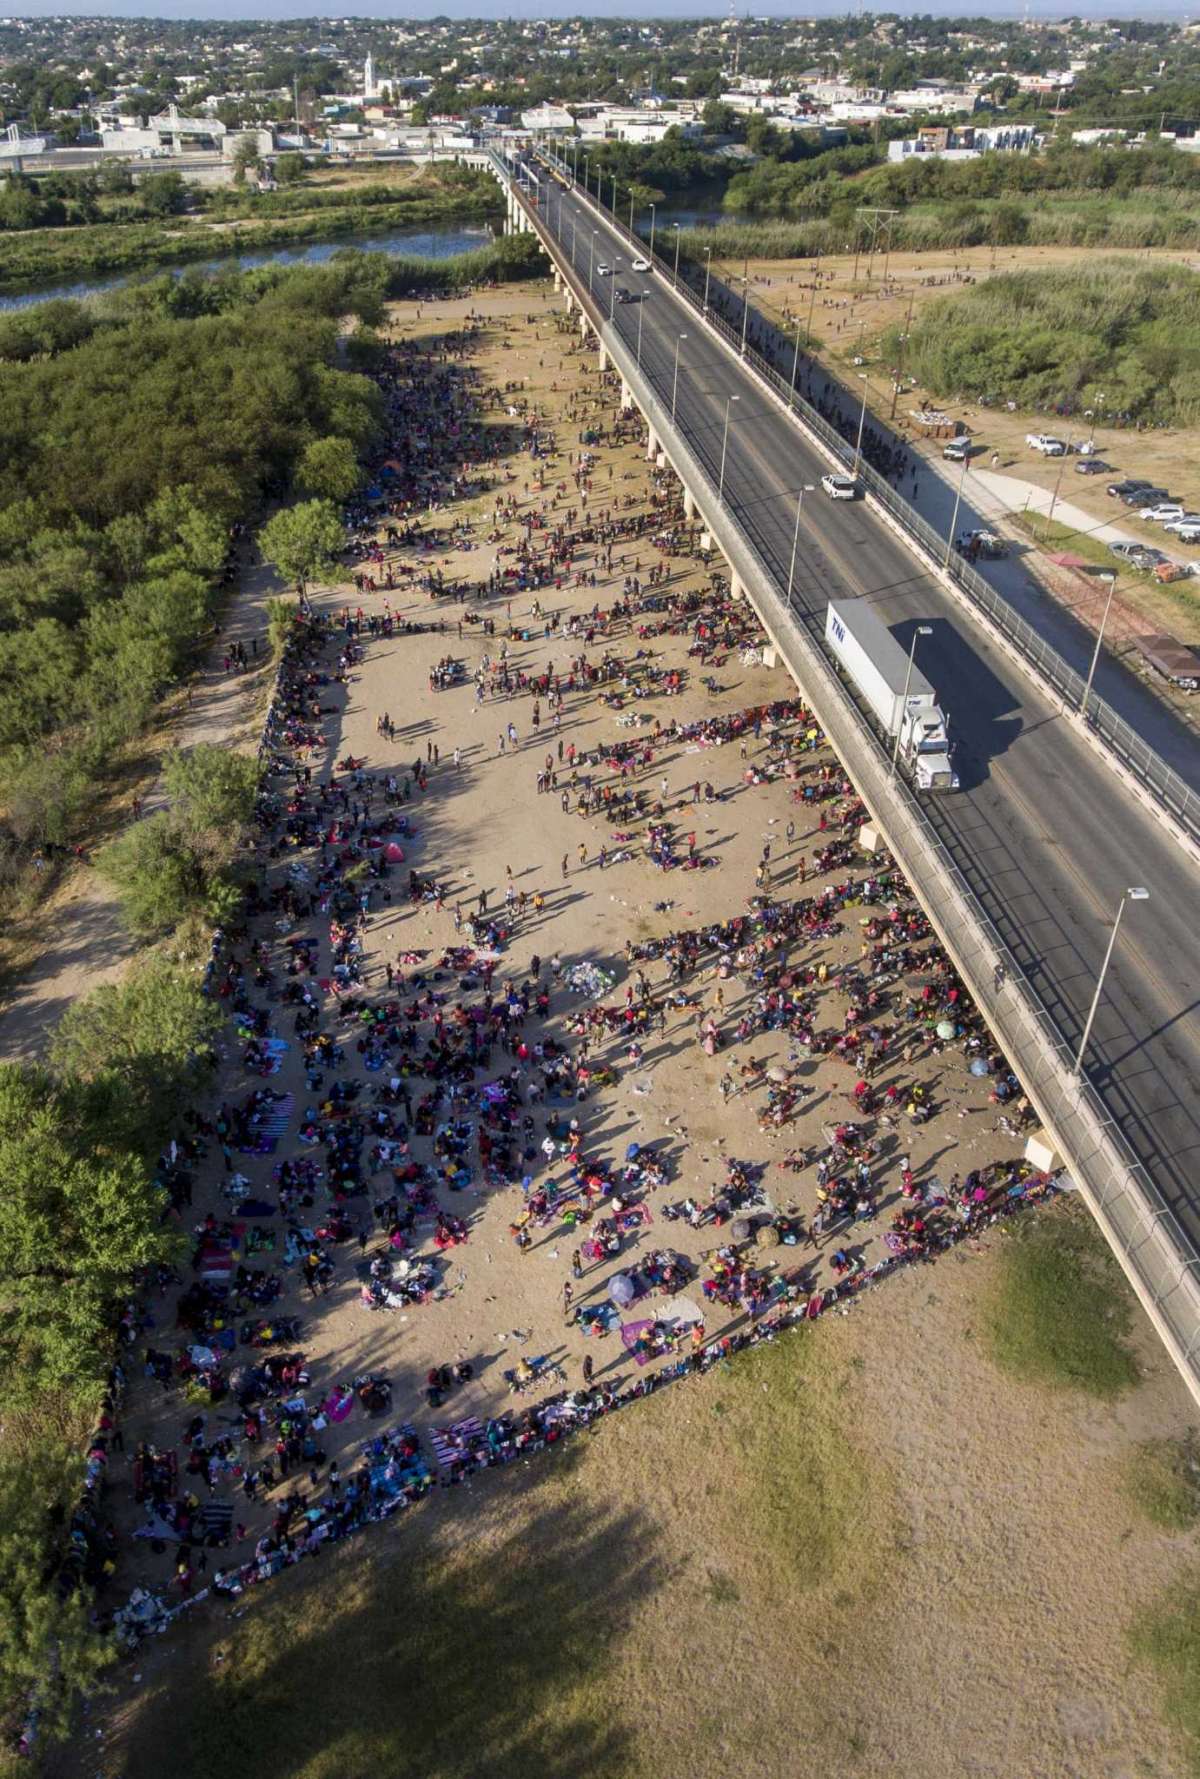 9,000 Haitan Migrants Under Del Rio bridge As huge camp Springs up in just Days!